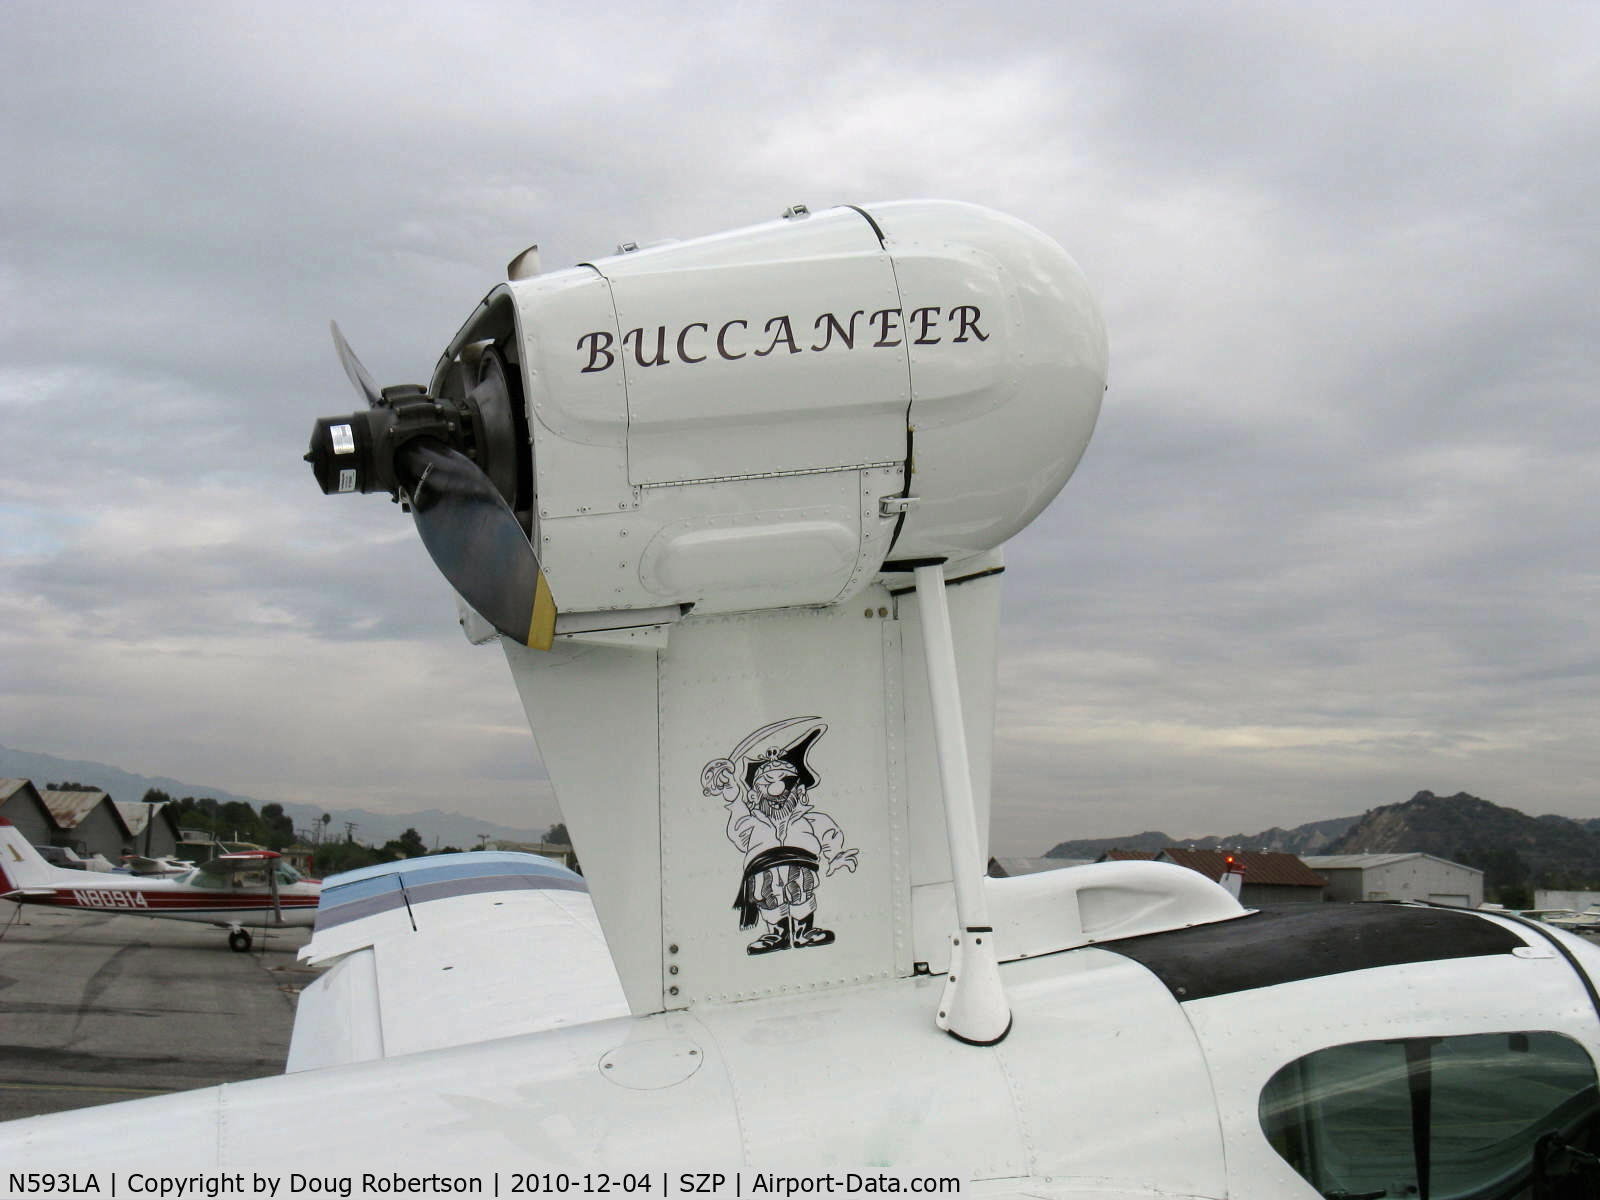 N593LA, 1974 Lake LA-4-200 Buccaneer C/N 593, 1974 Lake LA-4-200 BUCCANEER, Lycoming IO-360 A&C 200 Hp, pusher engine